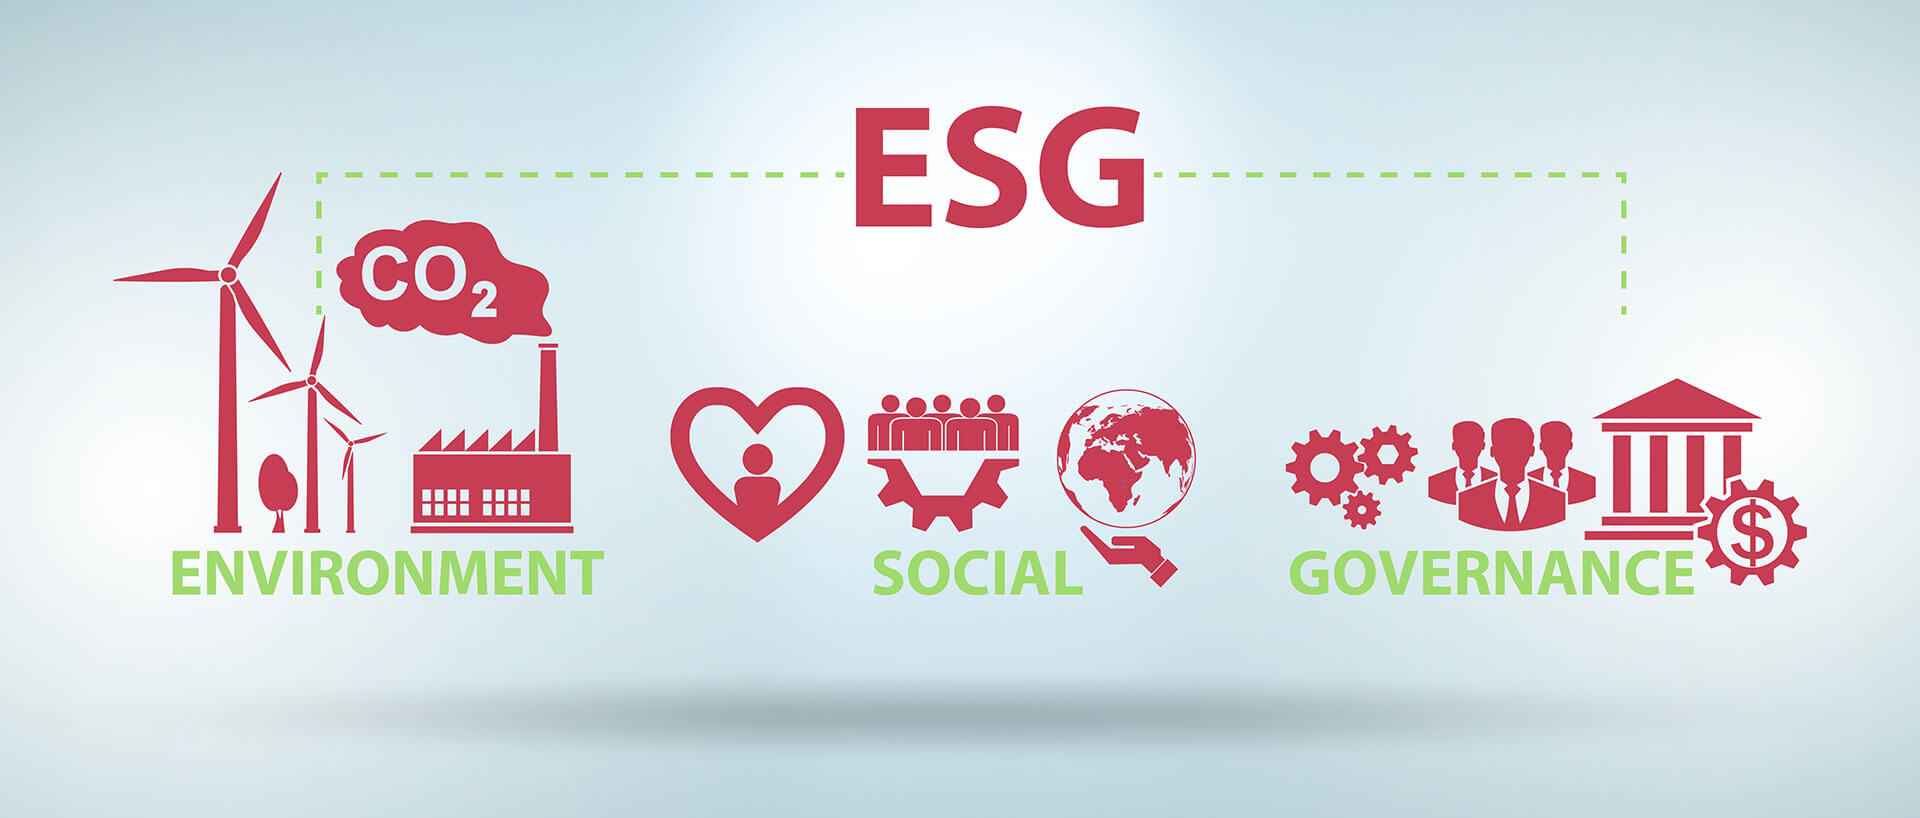 Die drei Bereiche von ESG